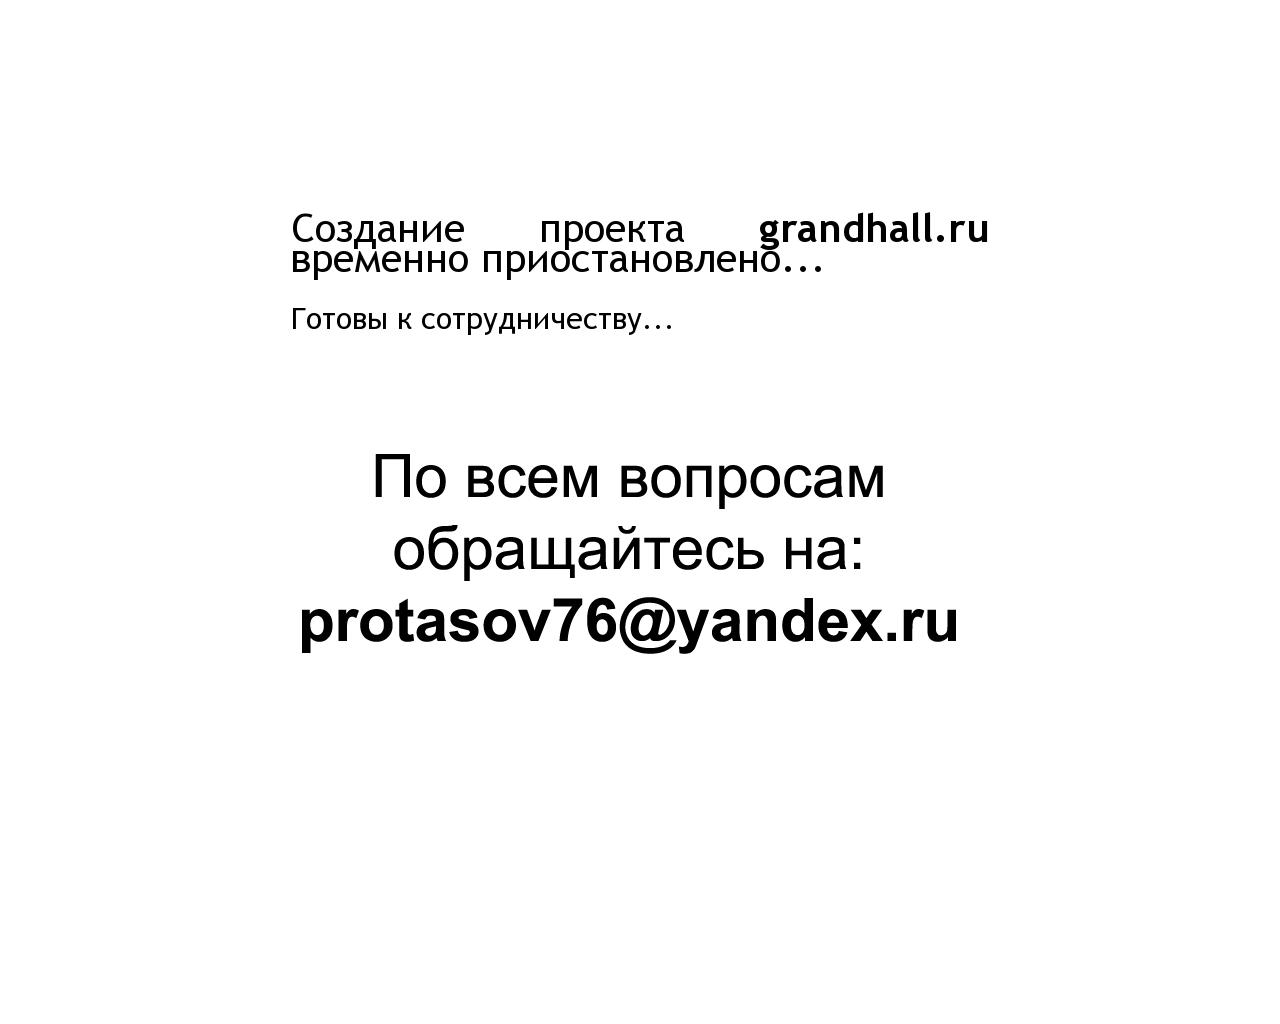 Изображение сайта grandhall.ru в разрешении 1280x1024